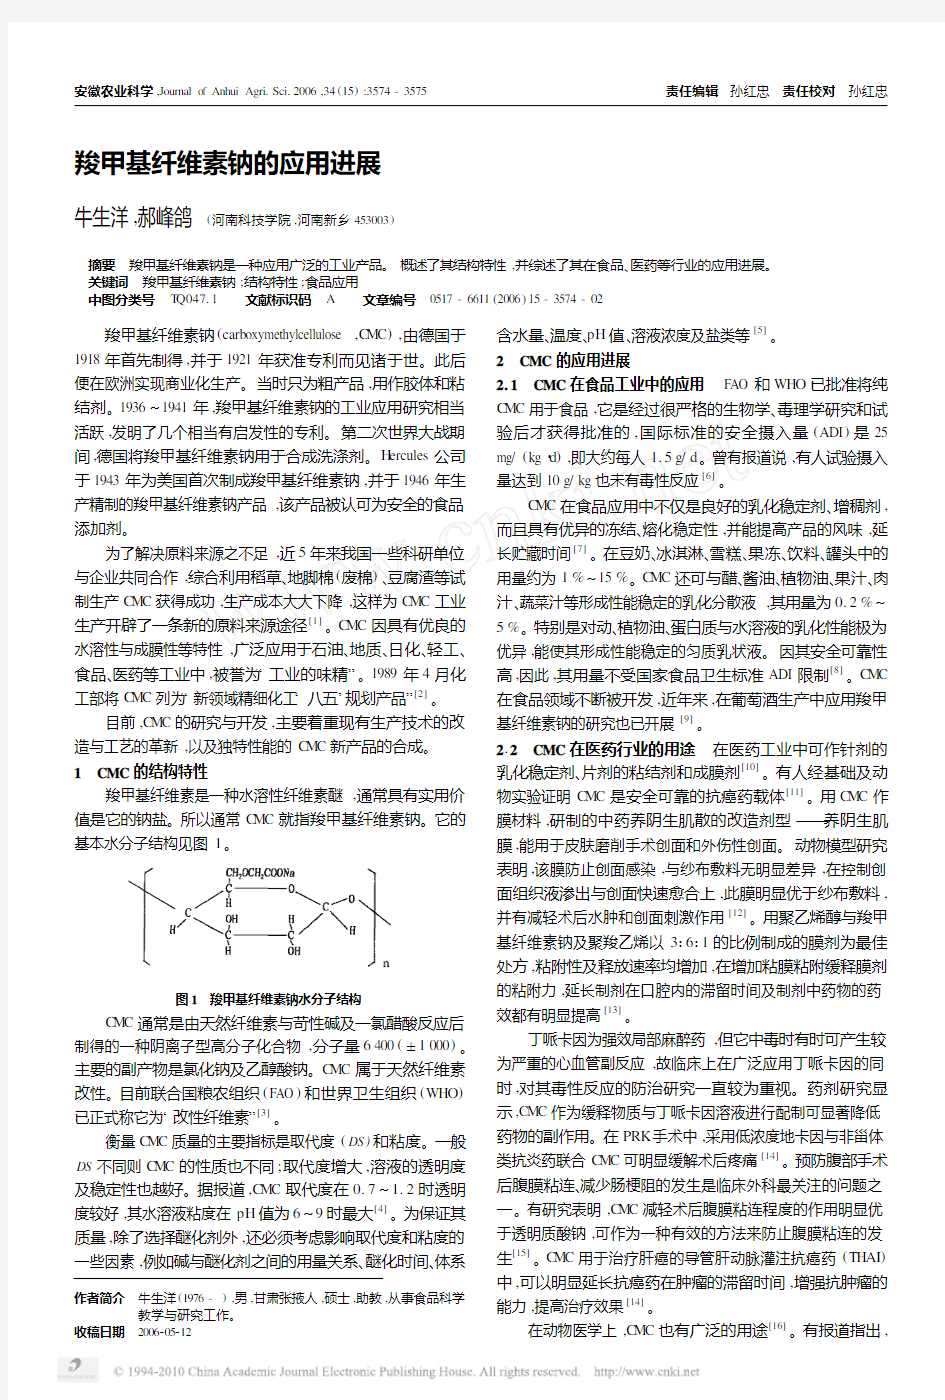 羧甲基纤维素钠的应用进展[1]